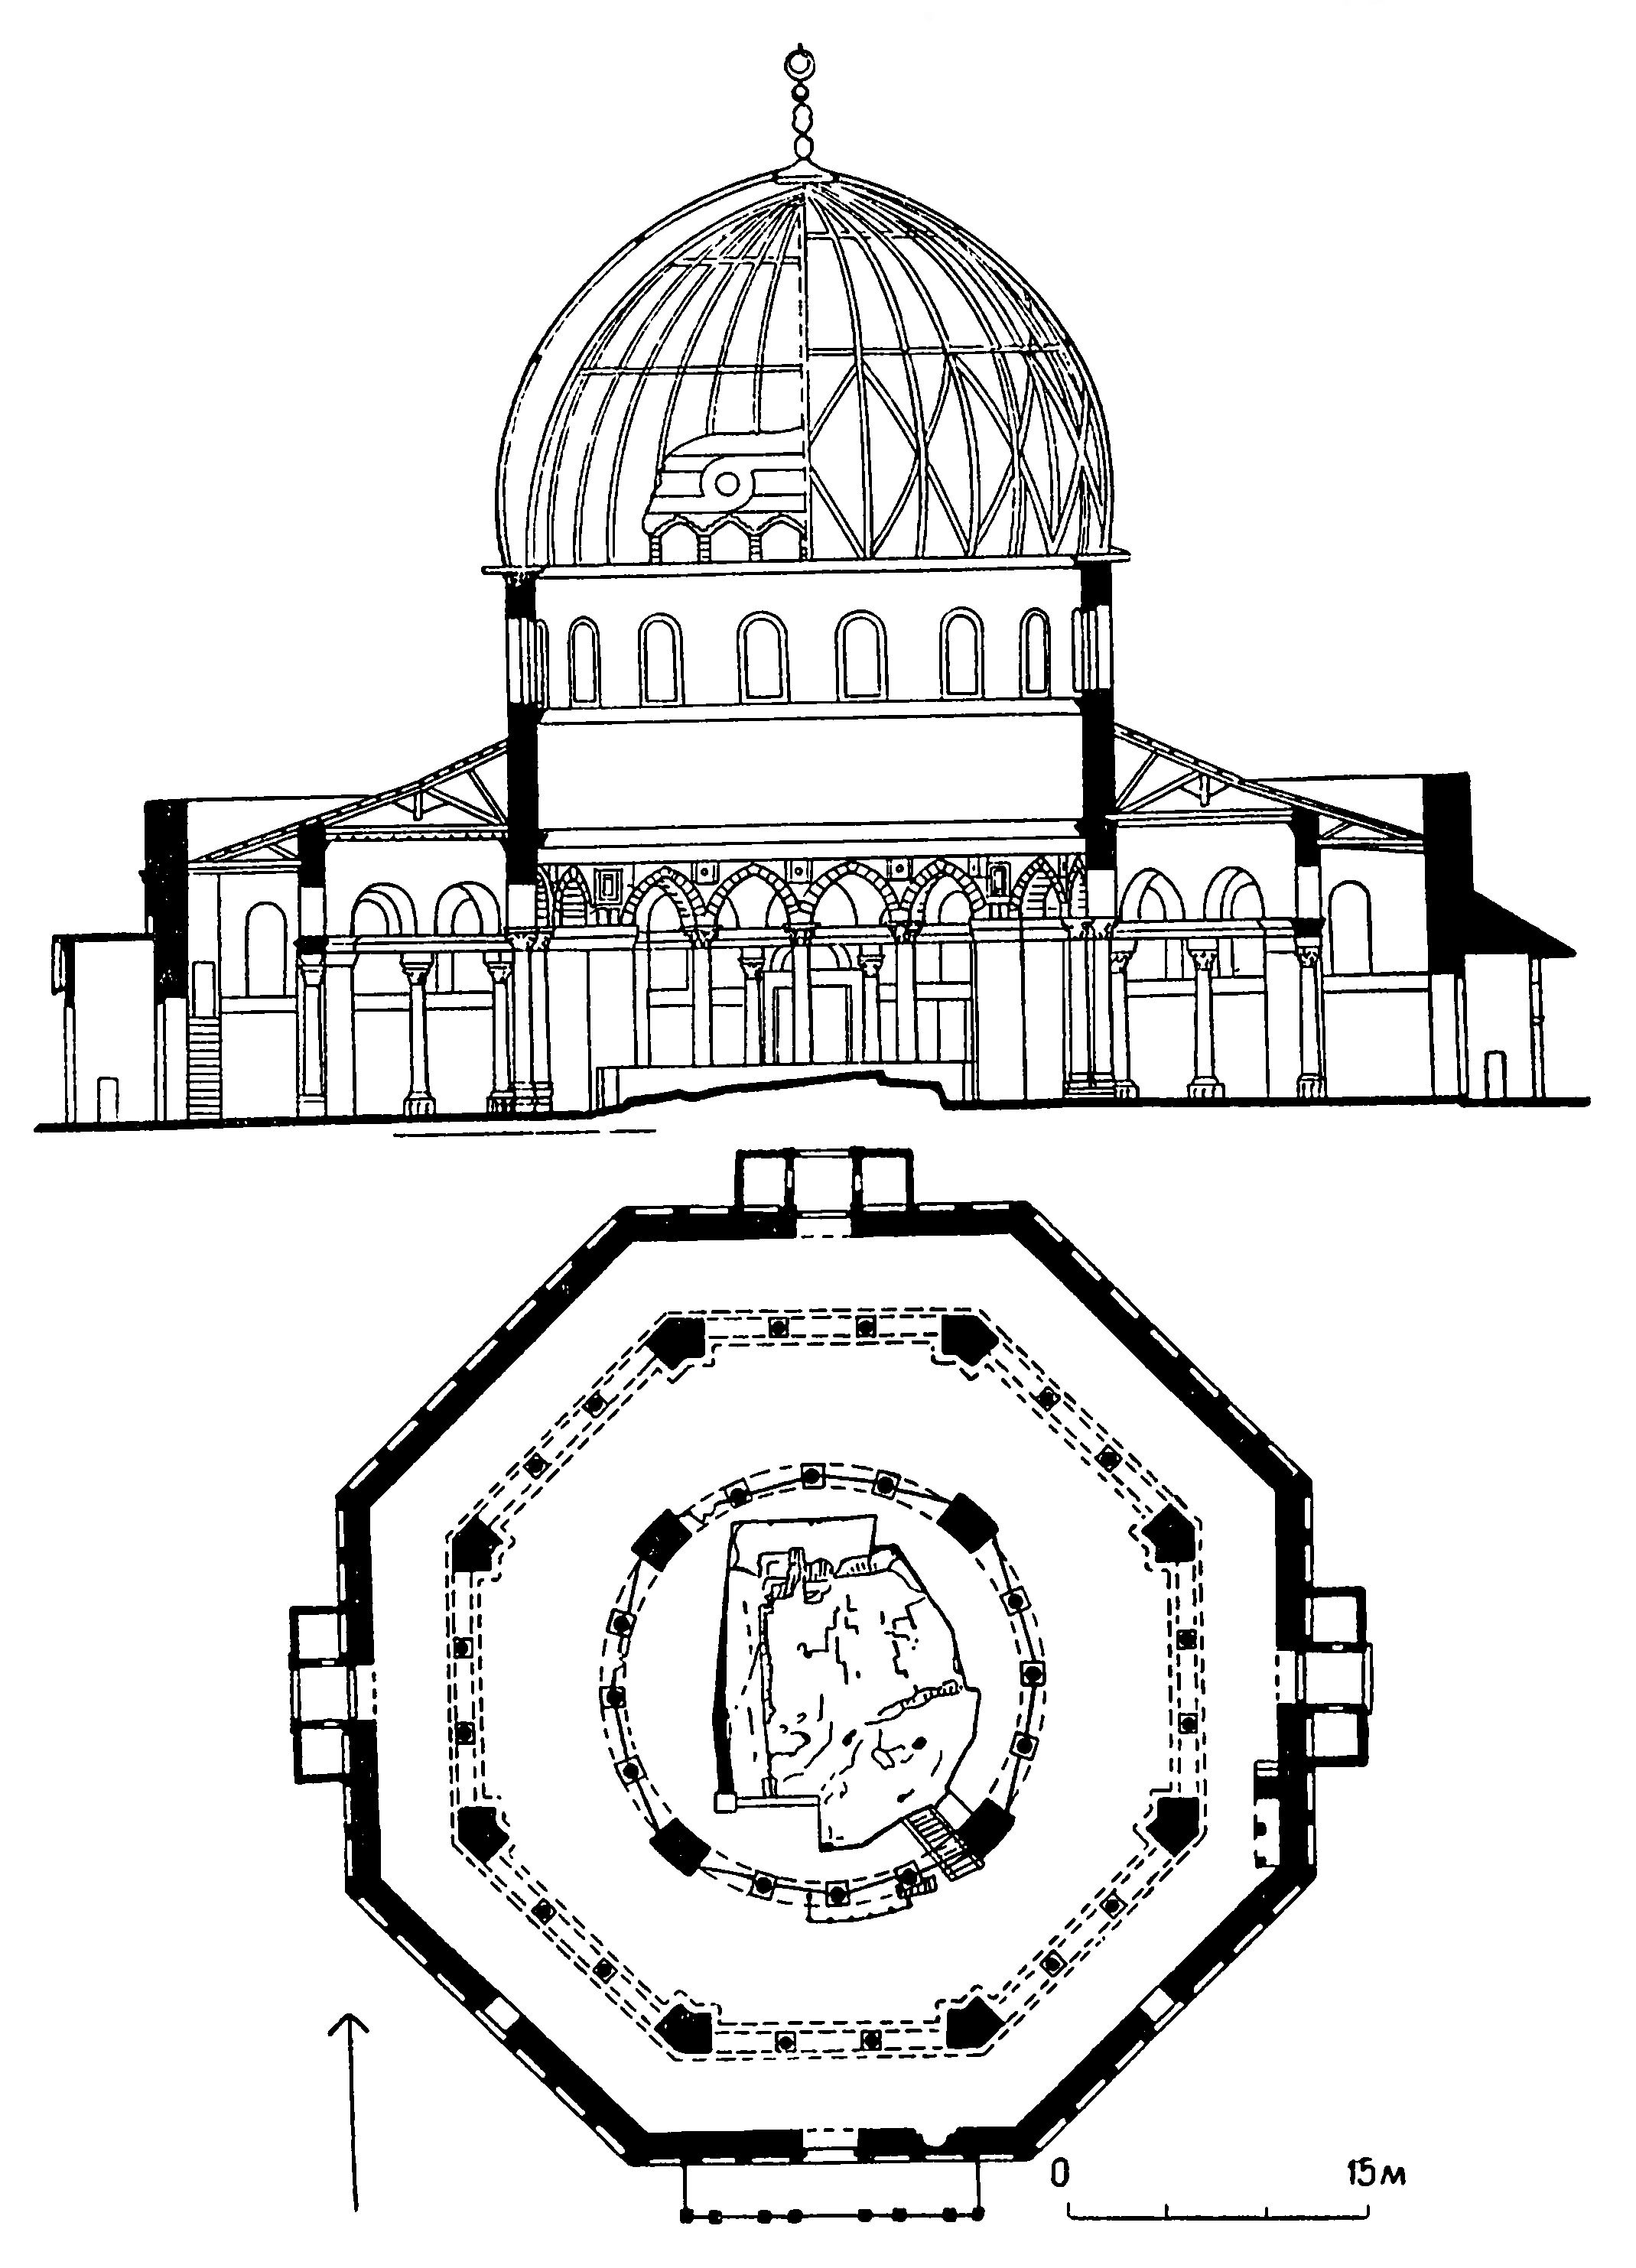 мечеть купол скалы в иерусалиме